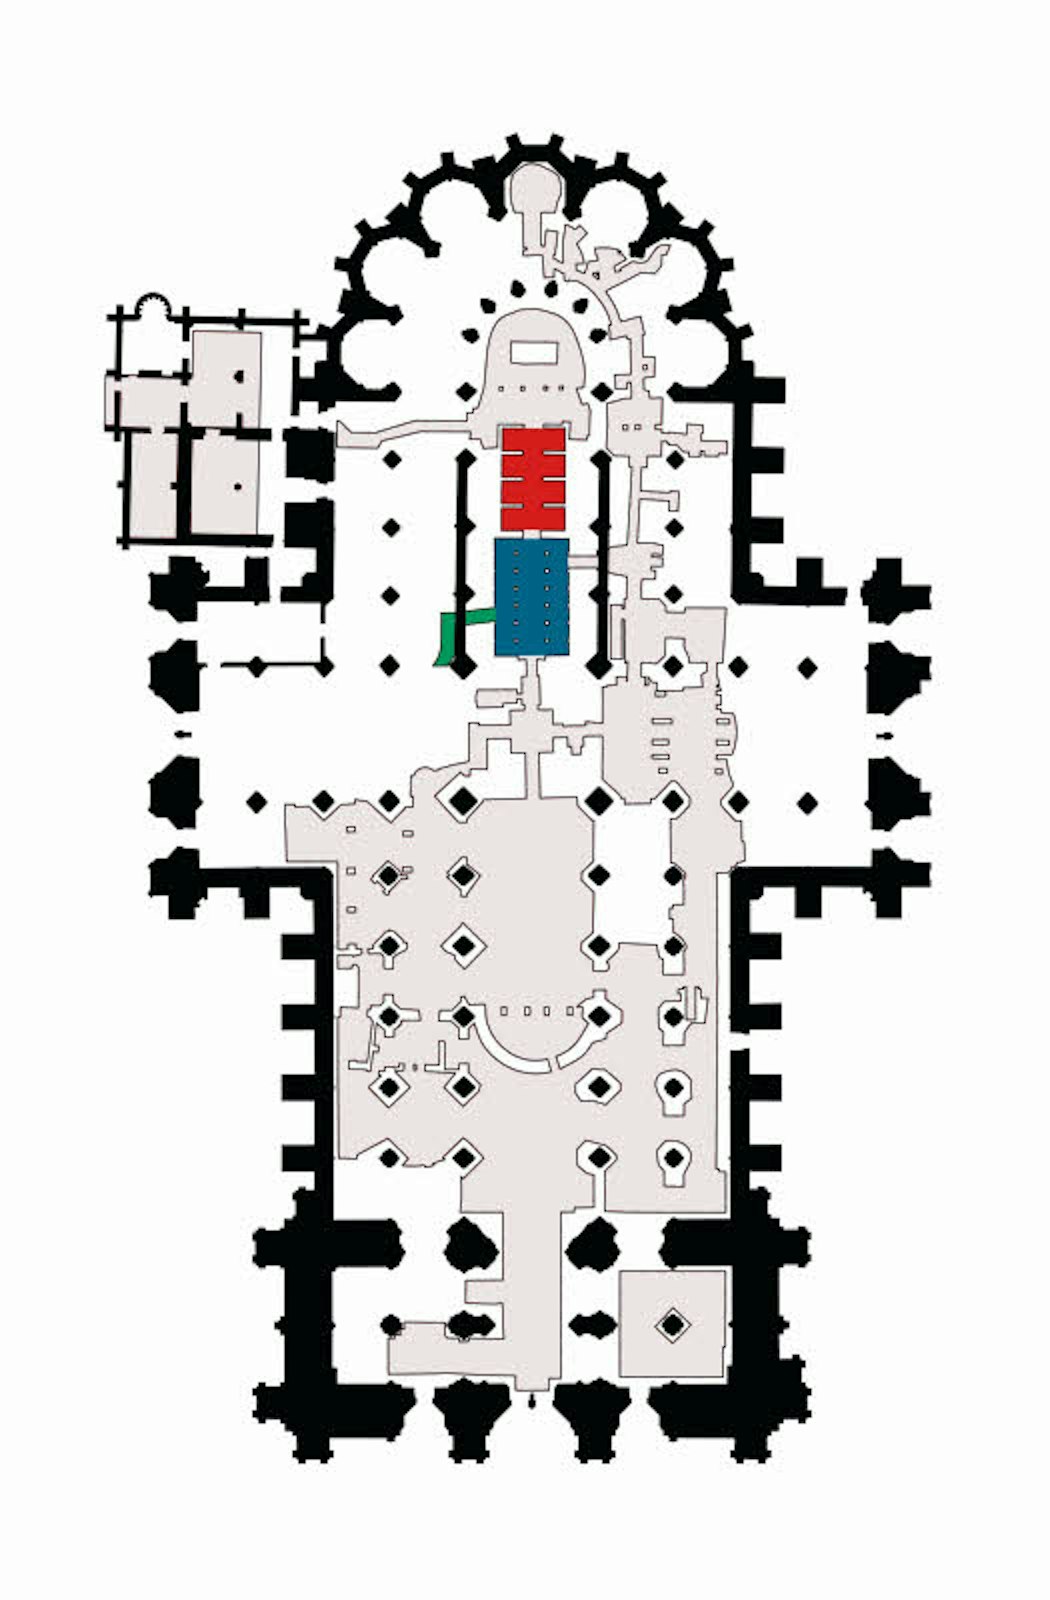 Grundriss des Kölner Doms: Rot eingezeichnet ist der Standort der Gruft, blau der Krypta, grün der Zugang zur Krypta.